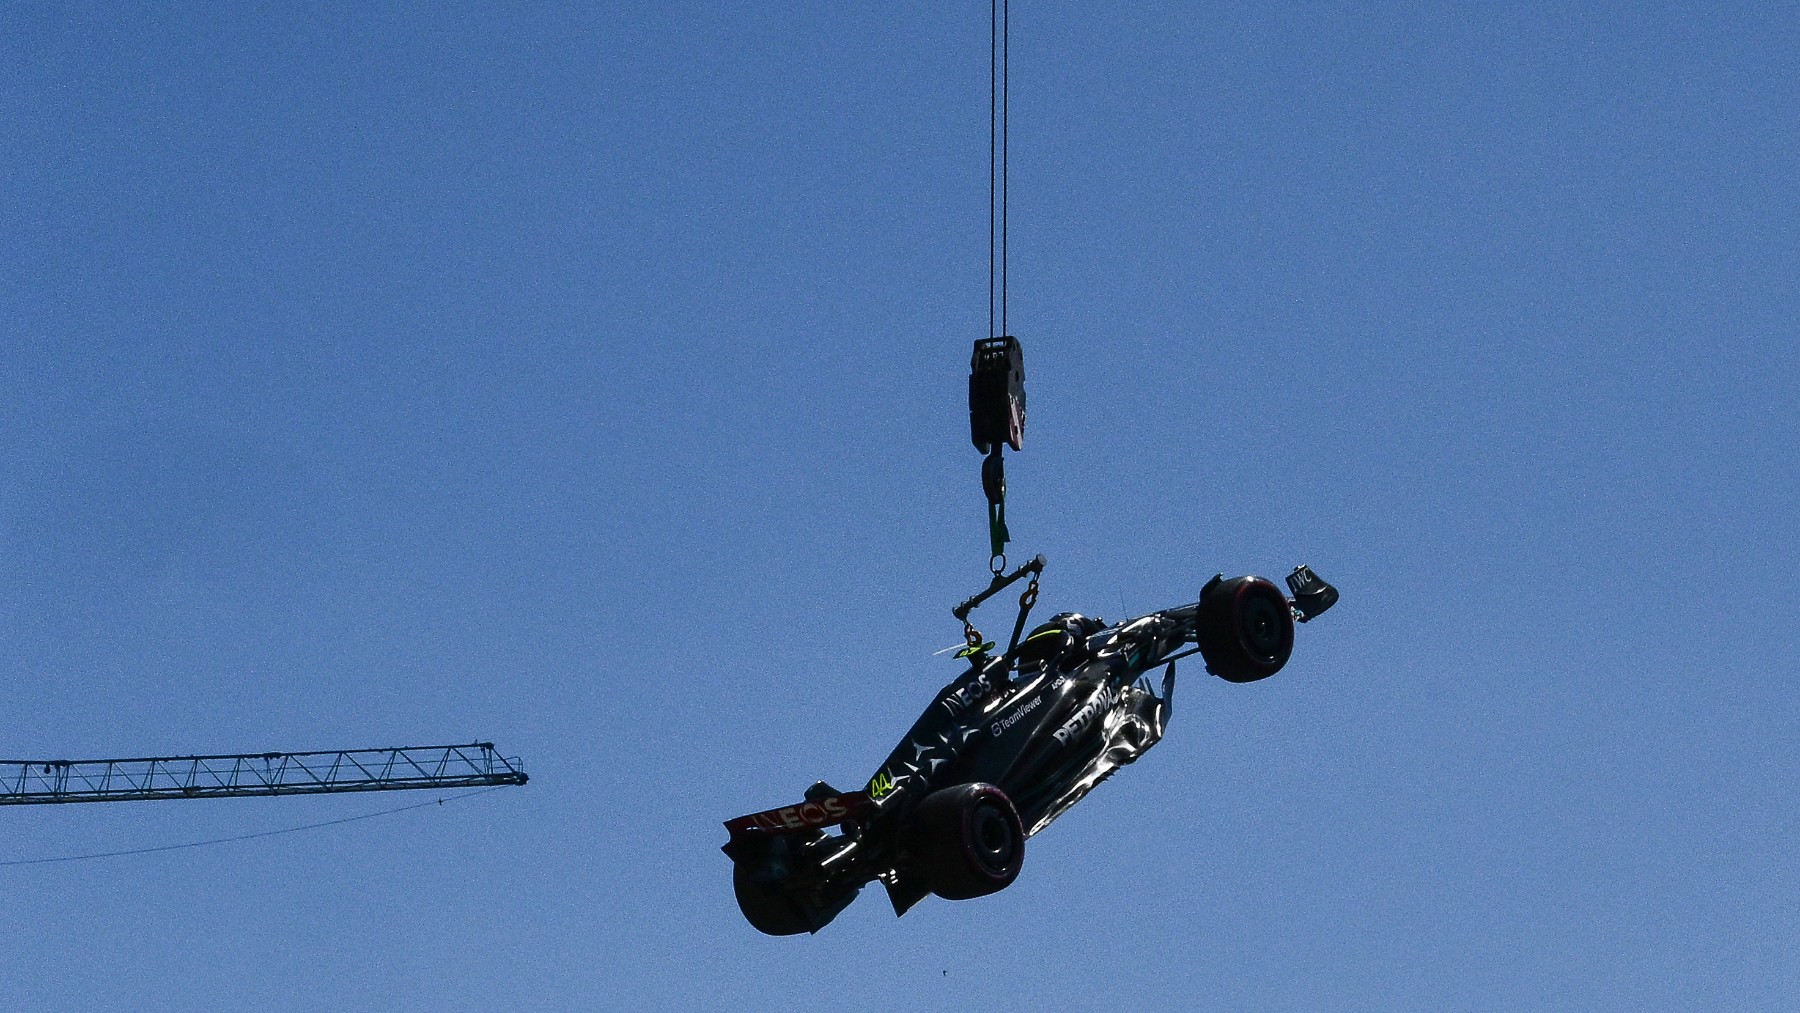 El Mercedes de Lewis Hamilton en el cielo de Mónaco sujetado por la grúa. (AFP)